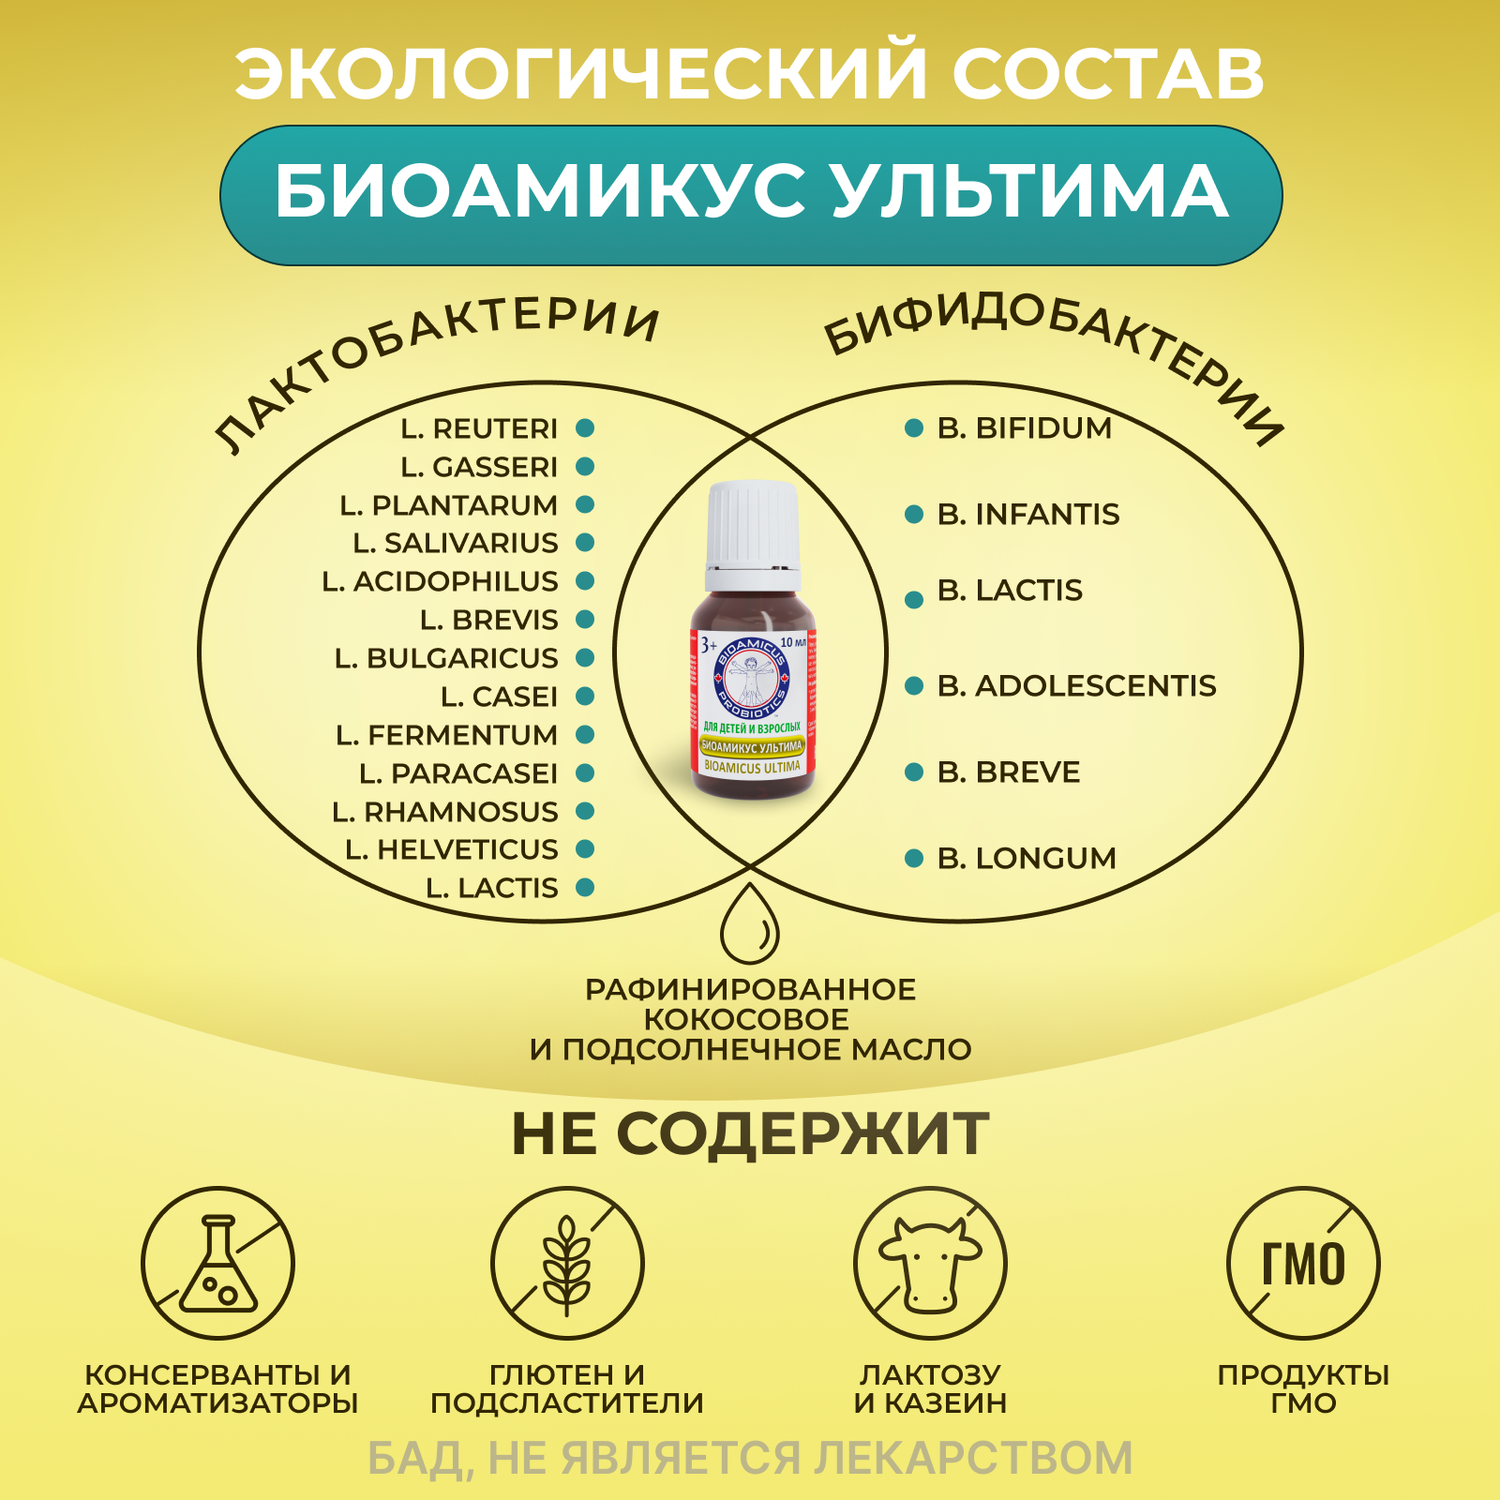 Пробиотик УЛЬТИМА для семьи BioAmicus с 3-х лет 19 штаммов бифидо- и лактобактерий 10 мл - фото 3